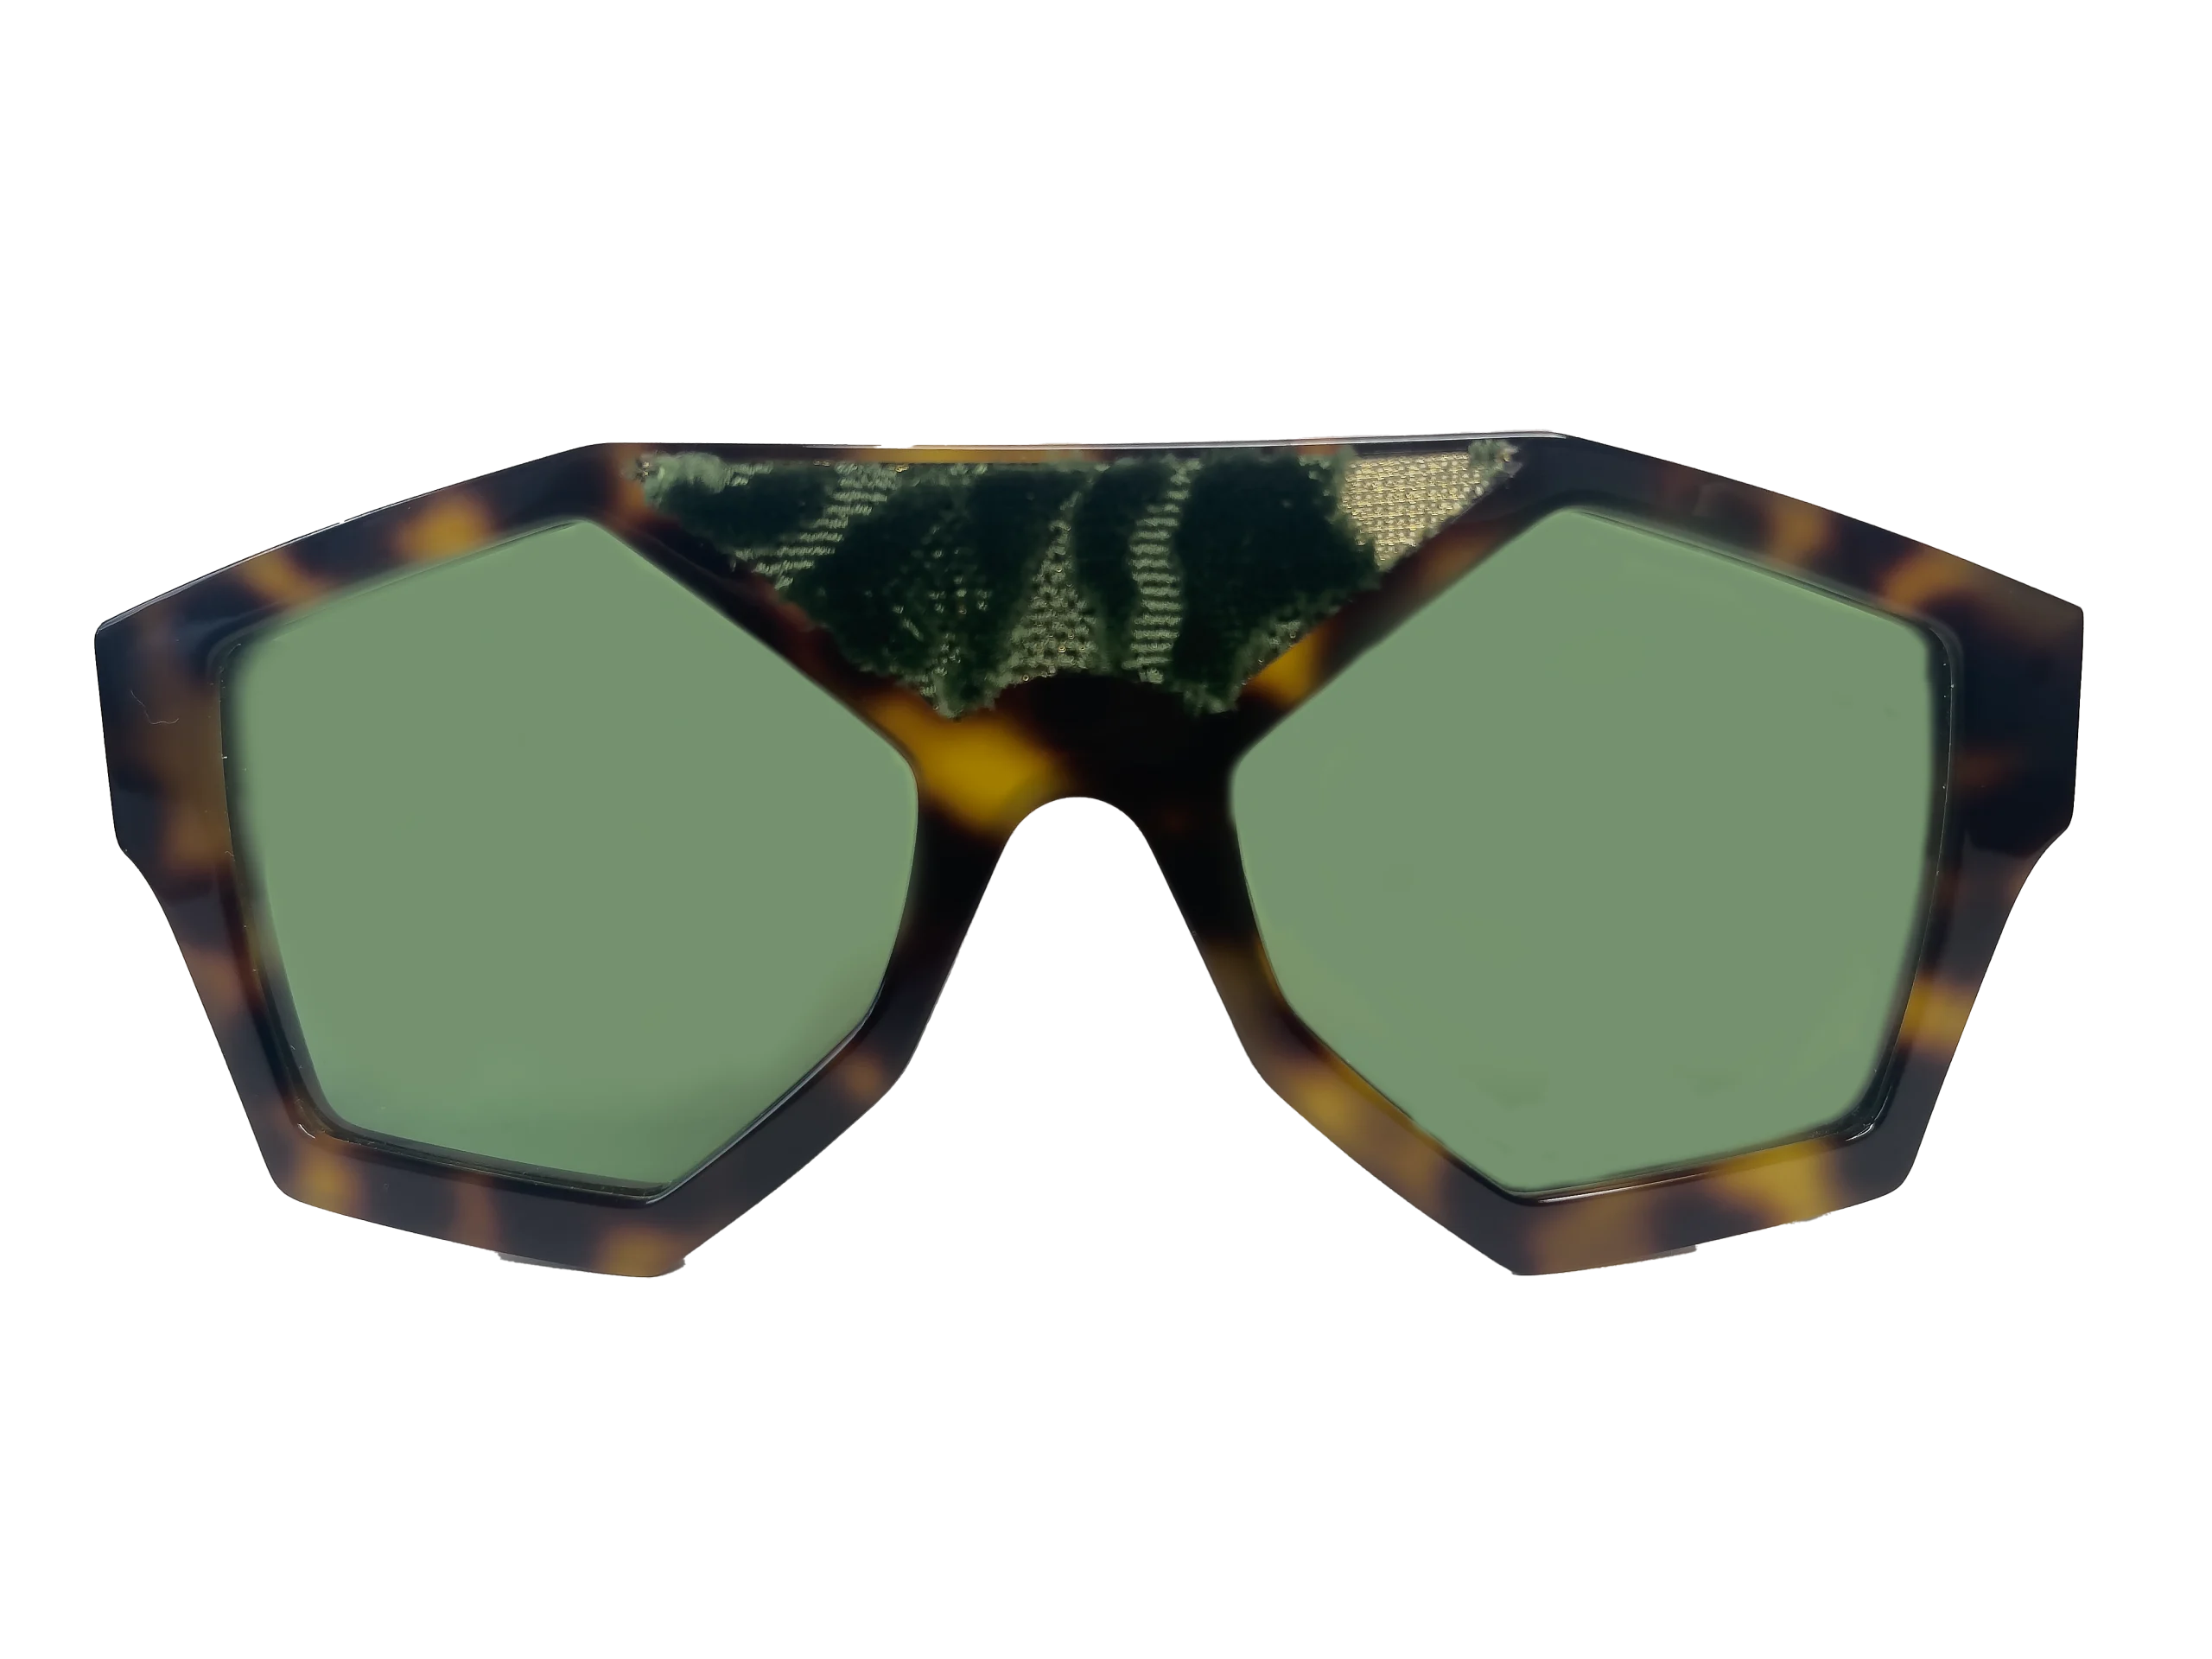 sunglasses marzocco silk velvet green Clarissa OliveriO